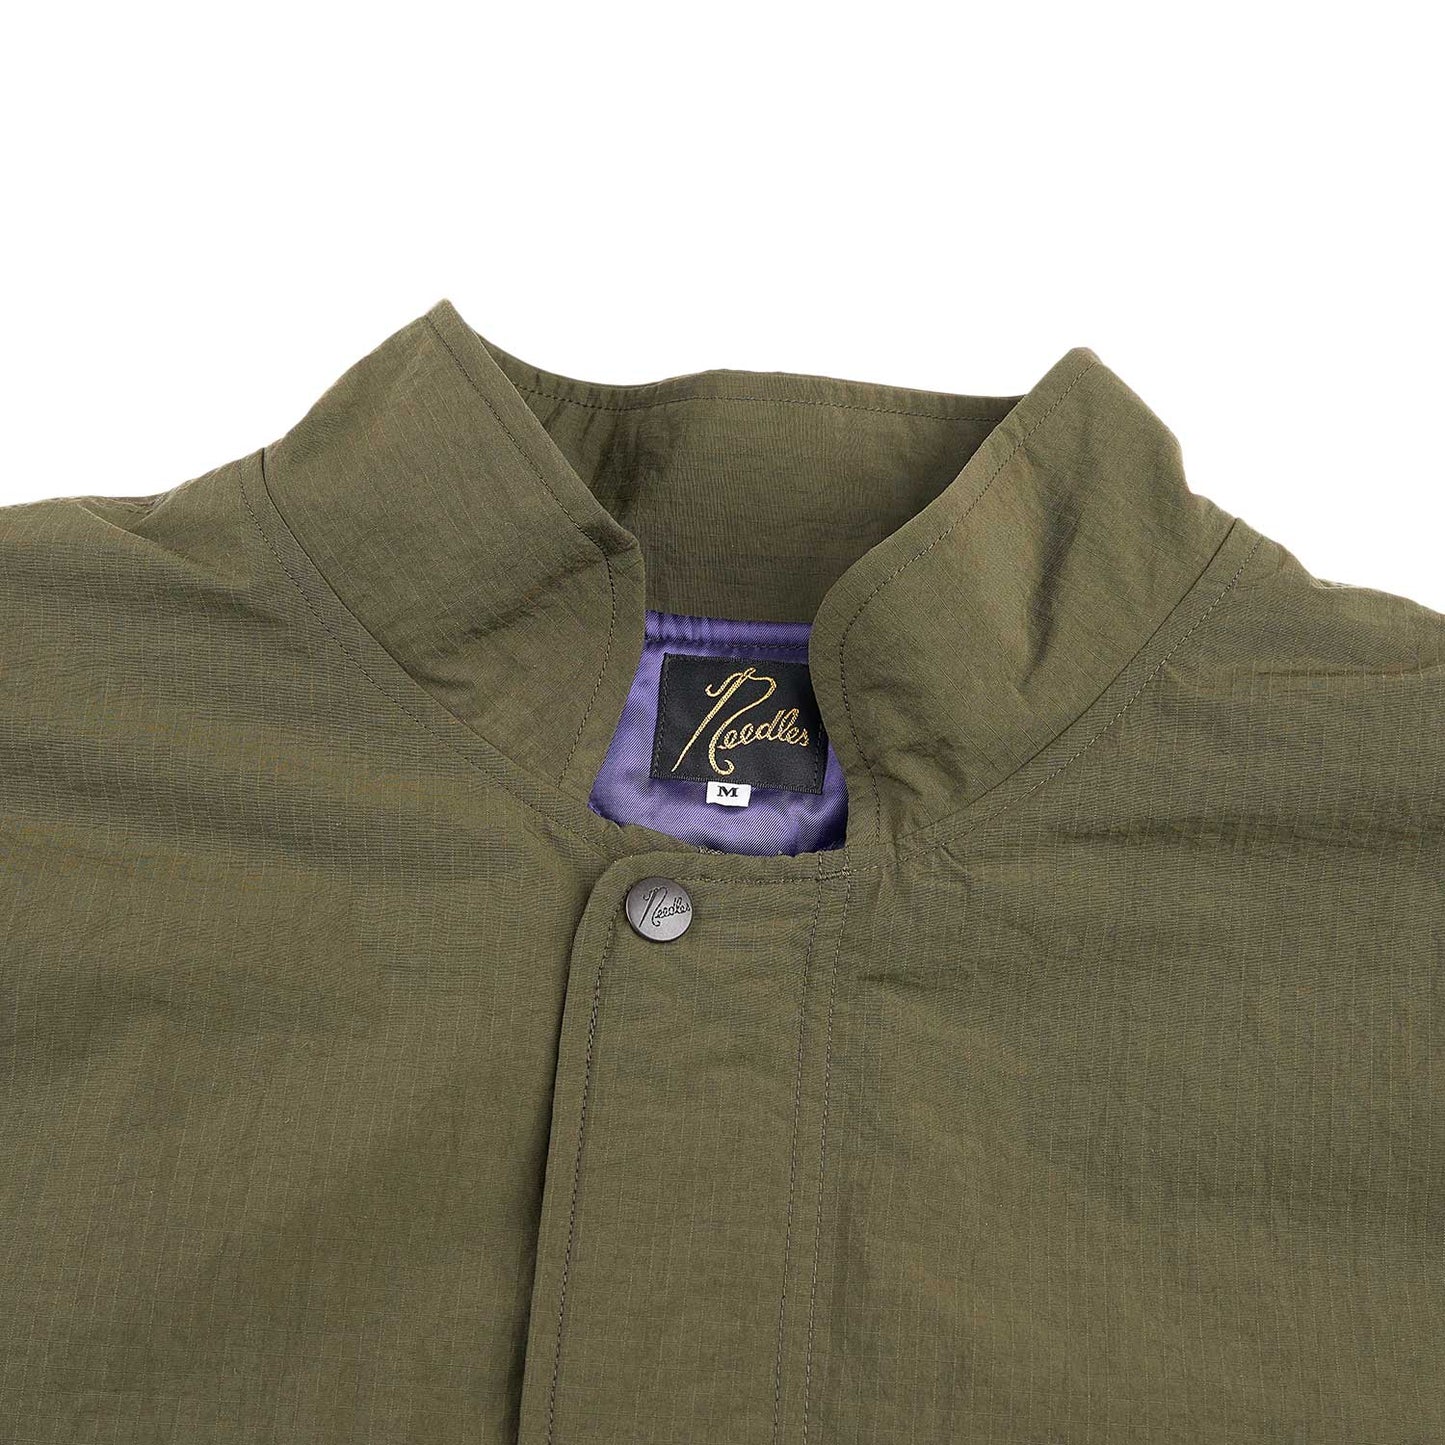 needles c.p. jacket (olive)